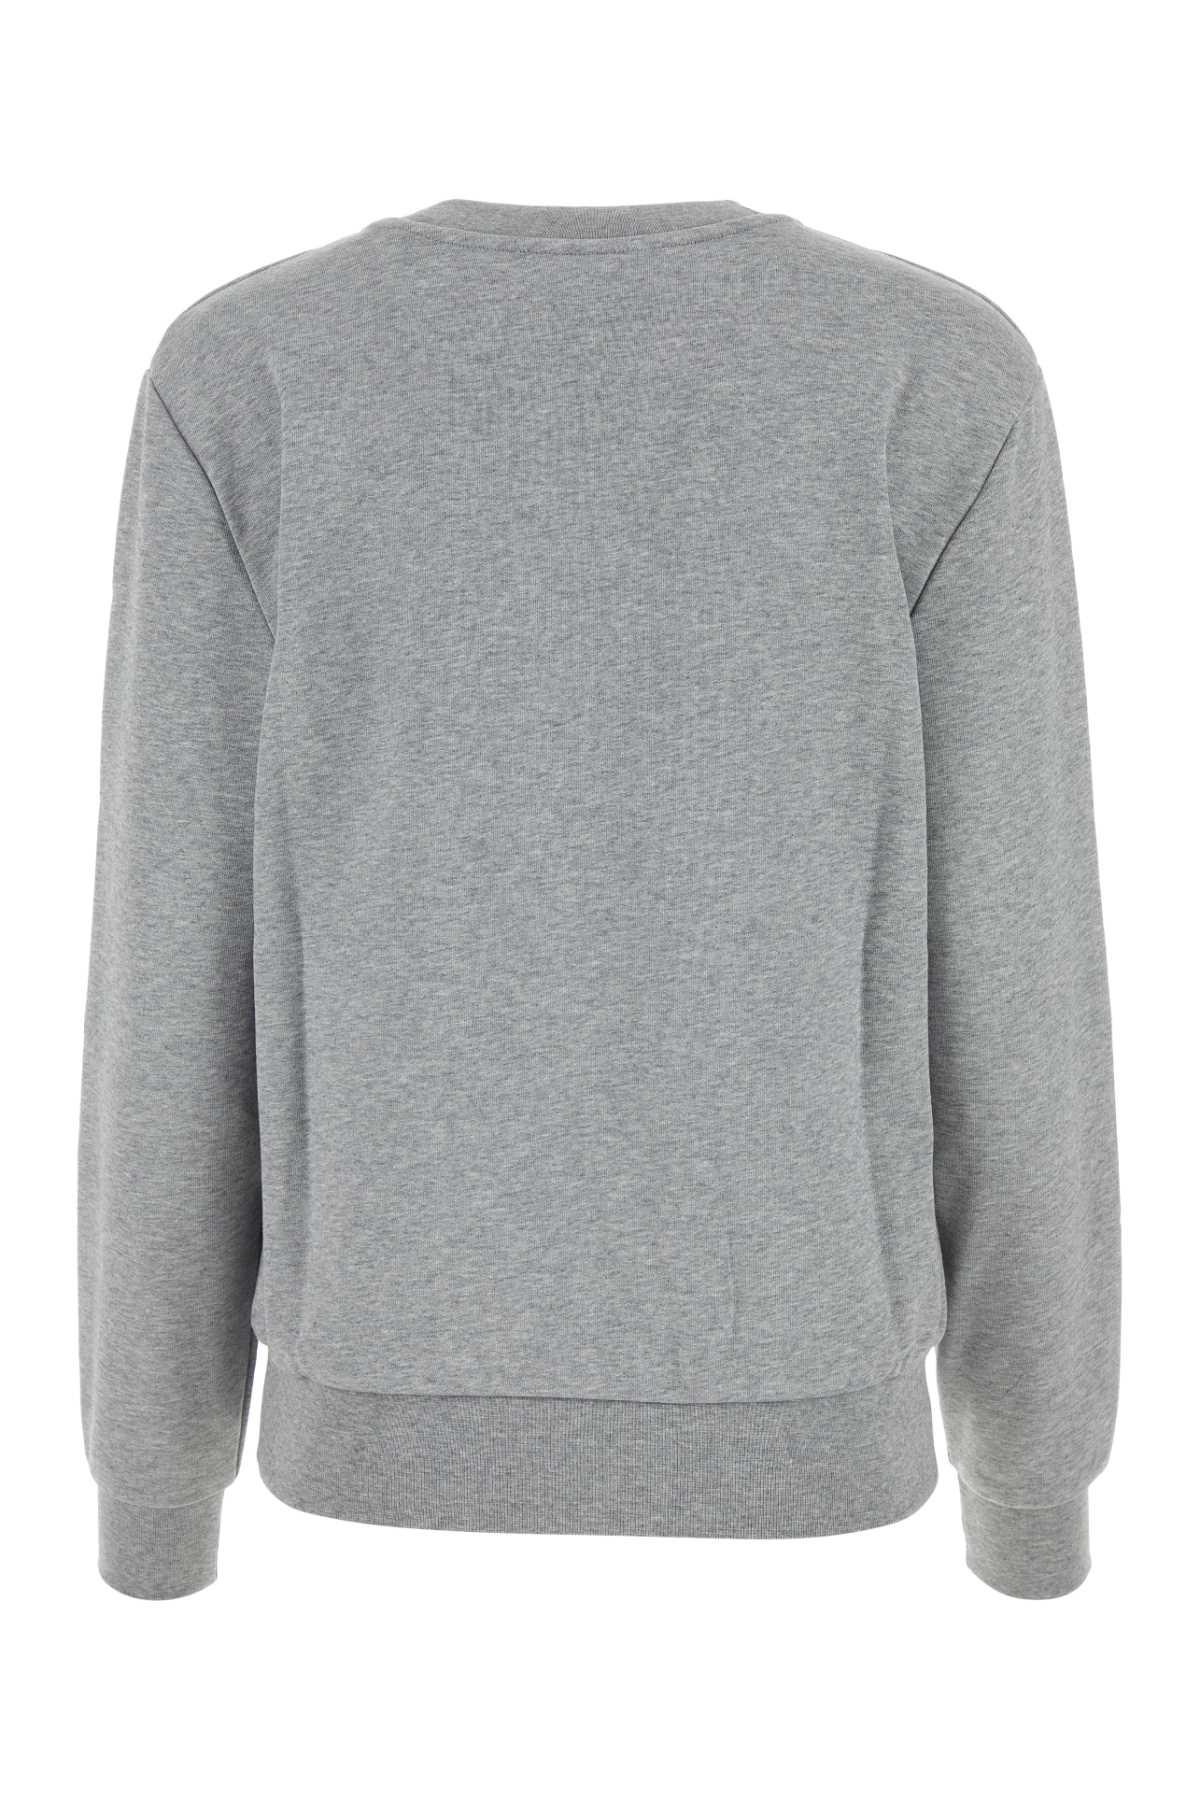 Shop Apc Melange Grey Cotton Sweatshirt In Grichidarnav